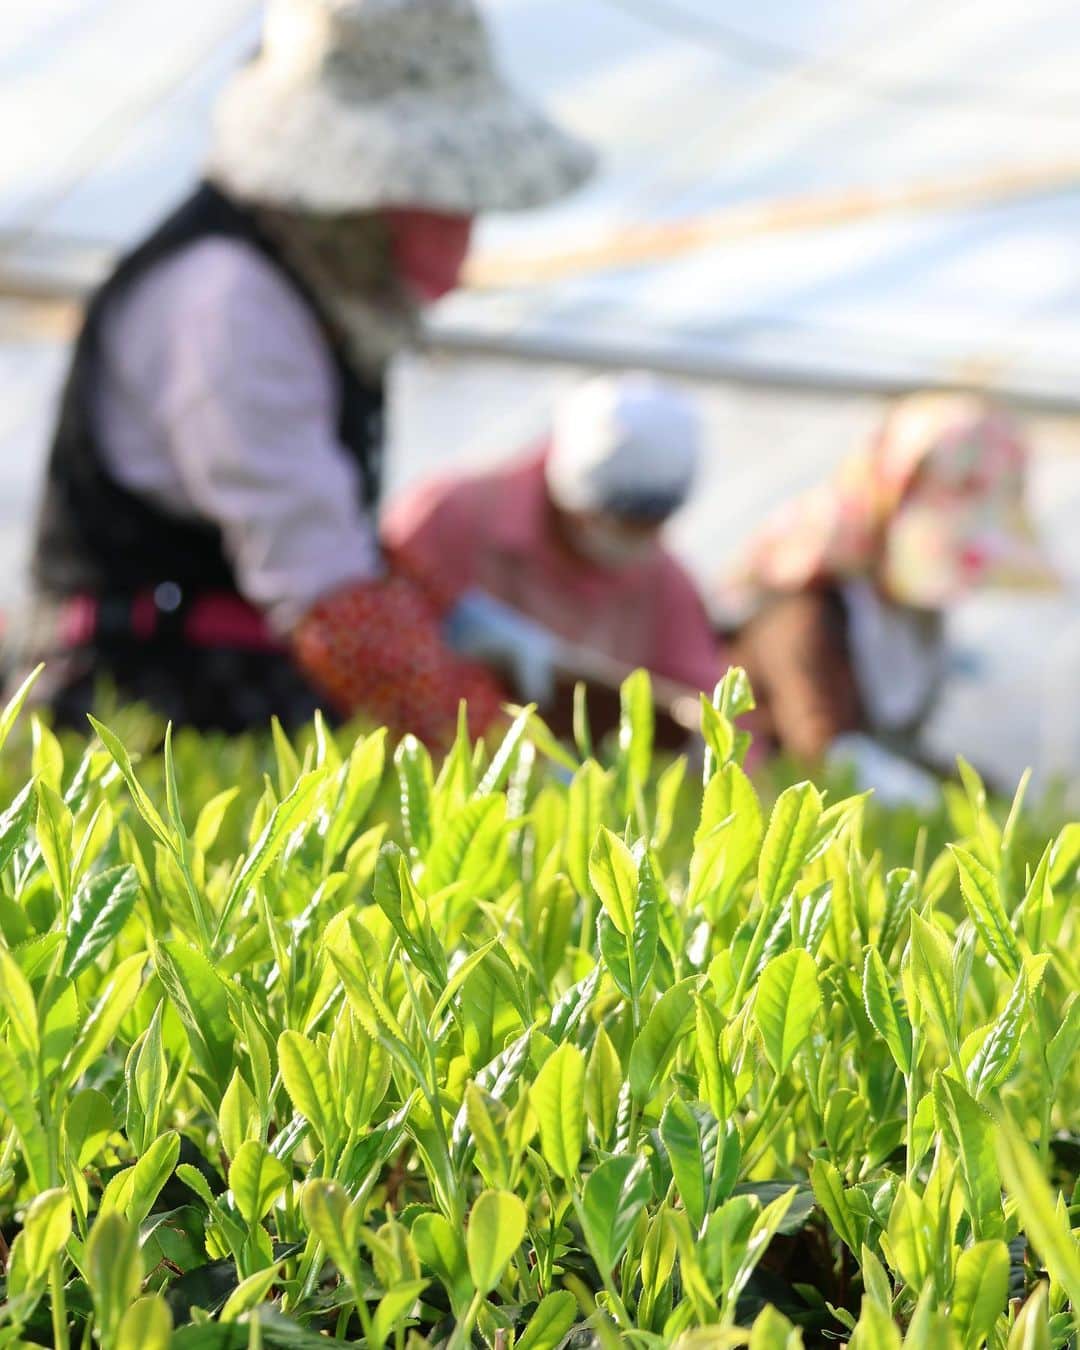 島田市のインスタグラム：「お茶のさすき園で、ハウス新茶の初摘みが行われました。萌黄色の茶葉は朝の光を浴び、島田の春の訪れを感じさせてくれました。 #島田市 #しまだ #shimada #静岡県 #静岡 #shizuoka #日本 #japan #島田市緑茶化計画 #新茶 #お茶 #緑茶 #初摘み #greentea」